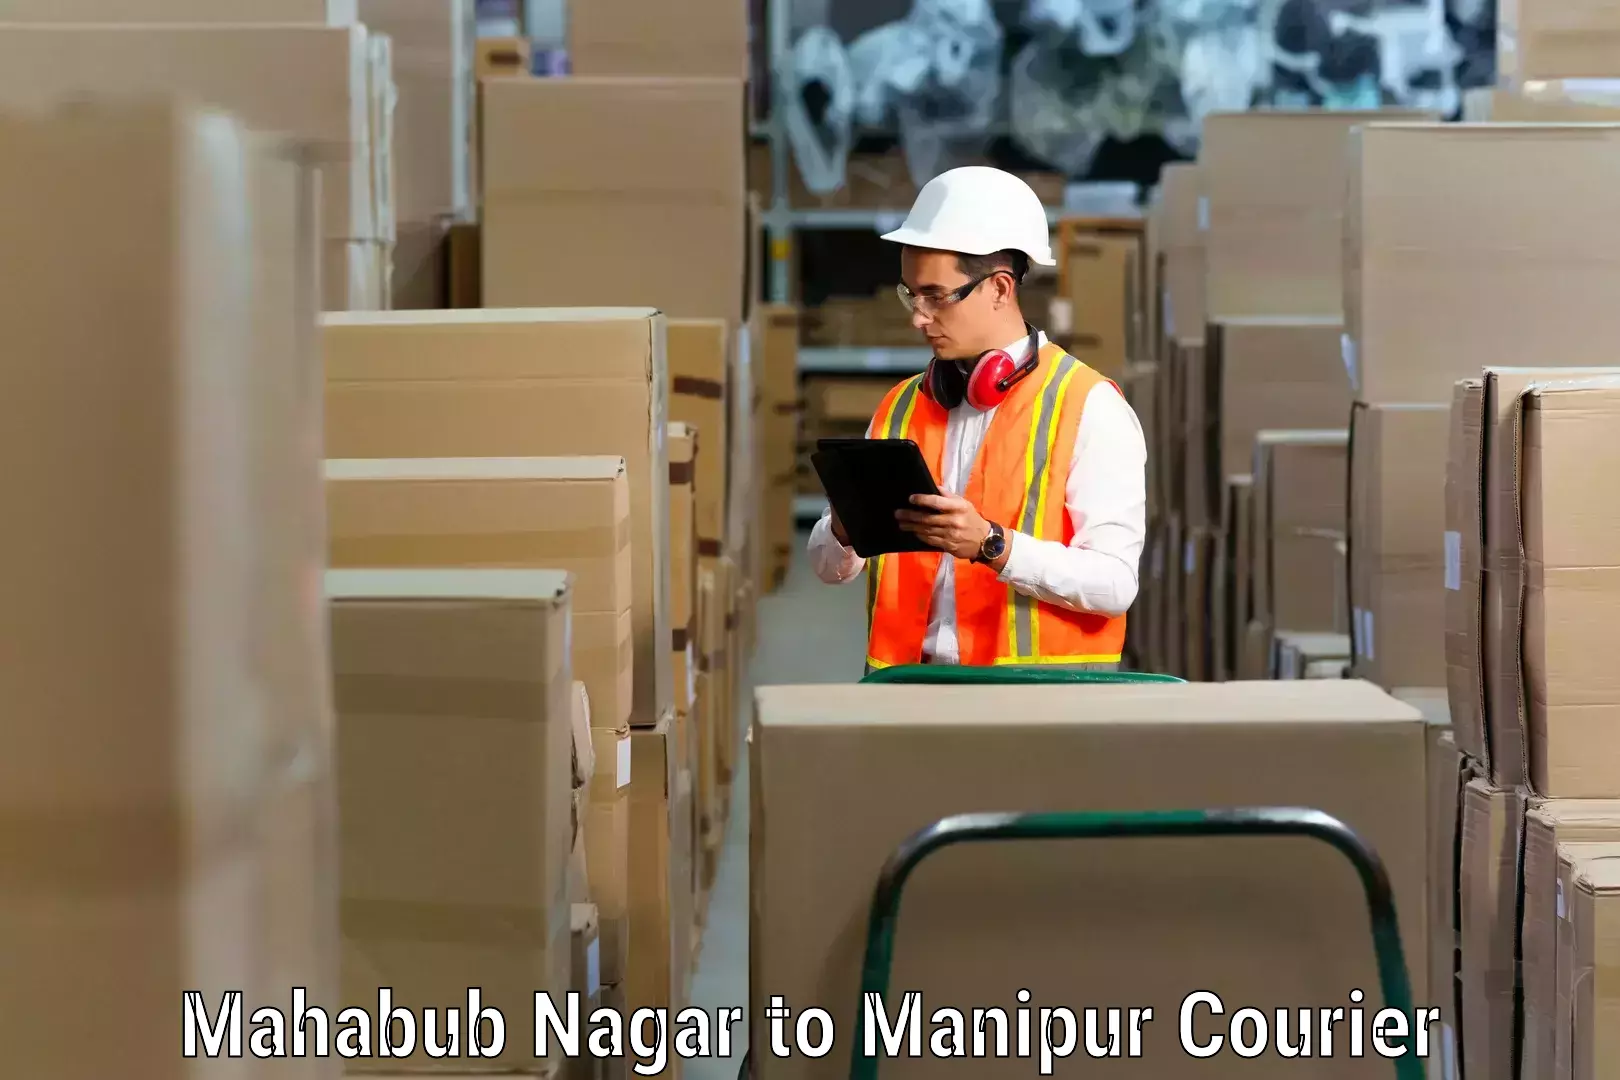 Furniture moving assistance Mahabub Nagar to Moirang